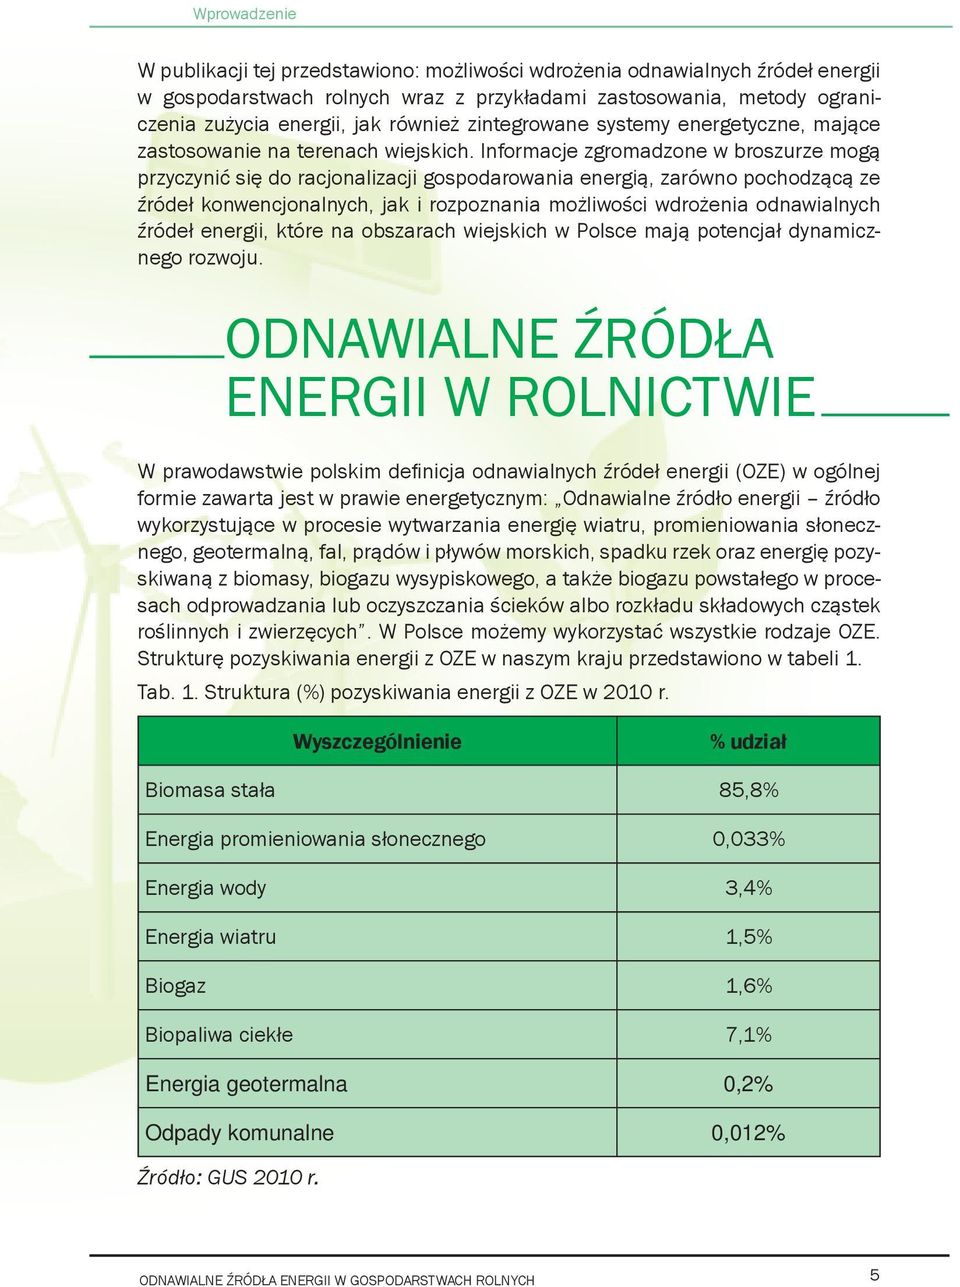 Informacje zgromadzone w broszurze mogą przyczynić się do racjonalizacji gospodarowania energią, zarówno pochodzącą ze źródeł konwencjonalnych, jak i rozpoznania możliwości wdrożenia odnawialnych